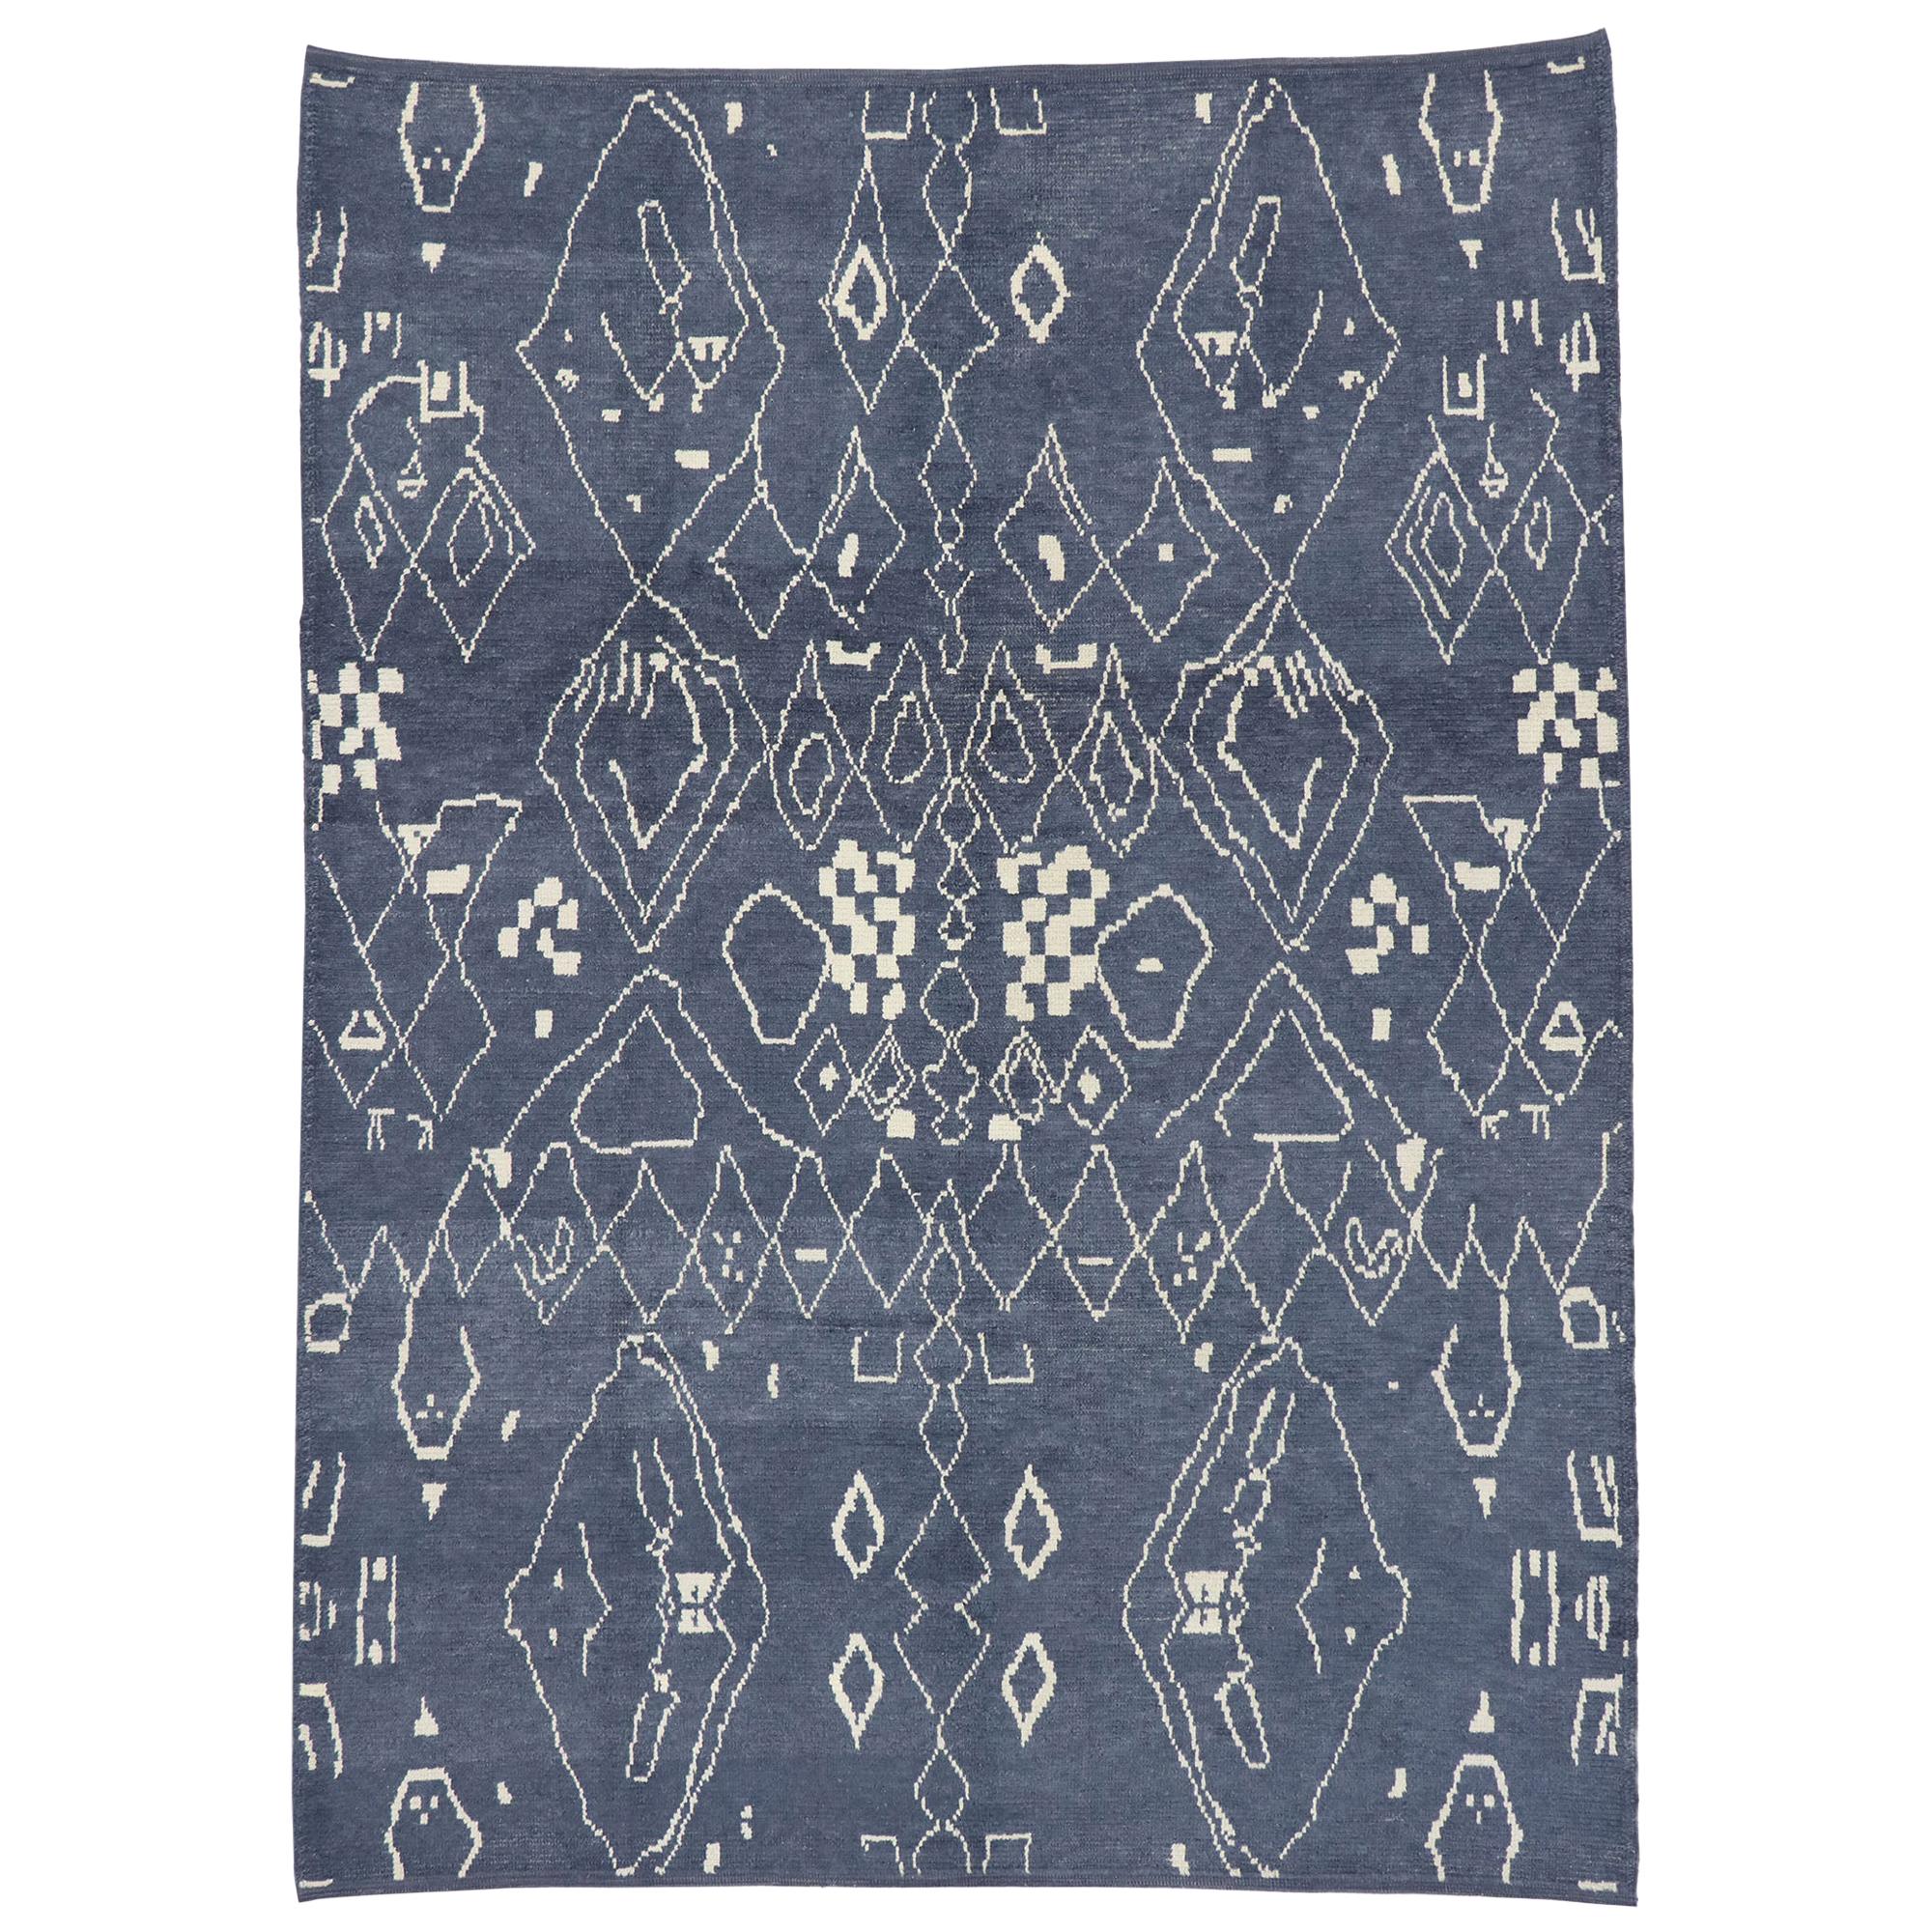 Nouveau tapis marocain contemporain de style avec motif tribal